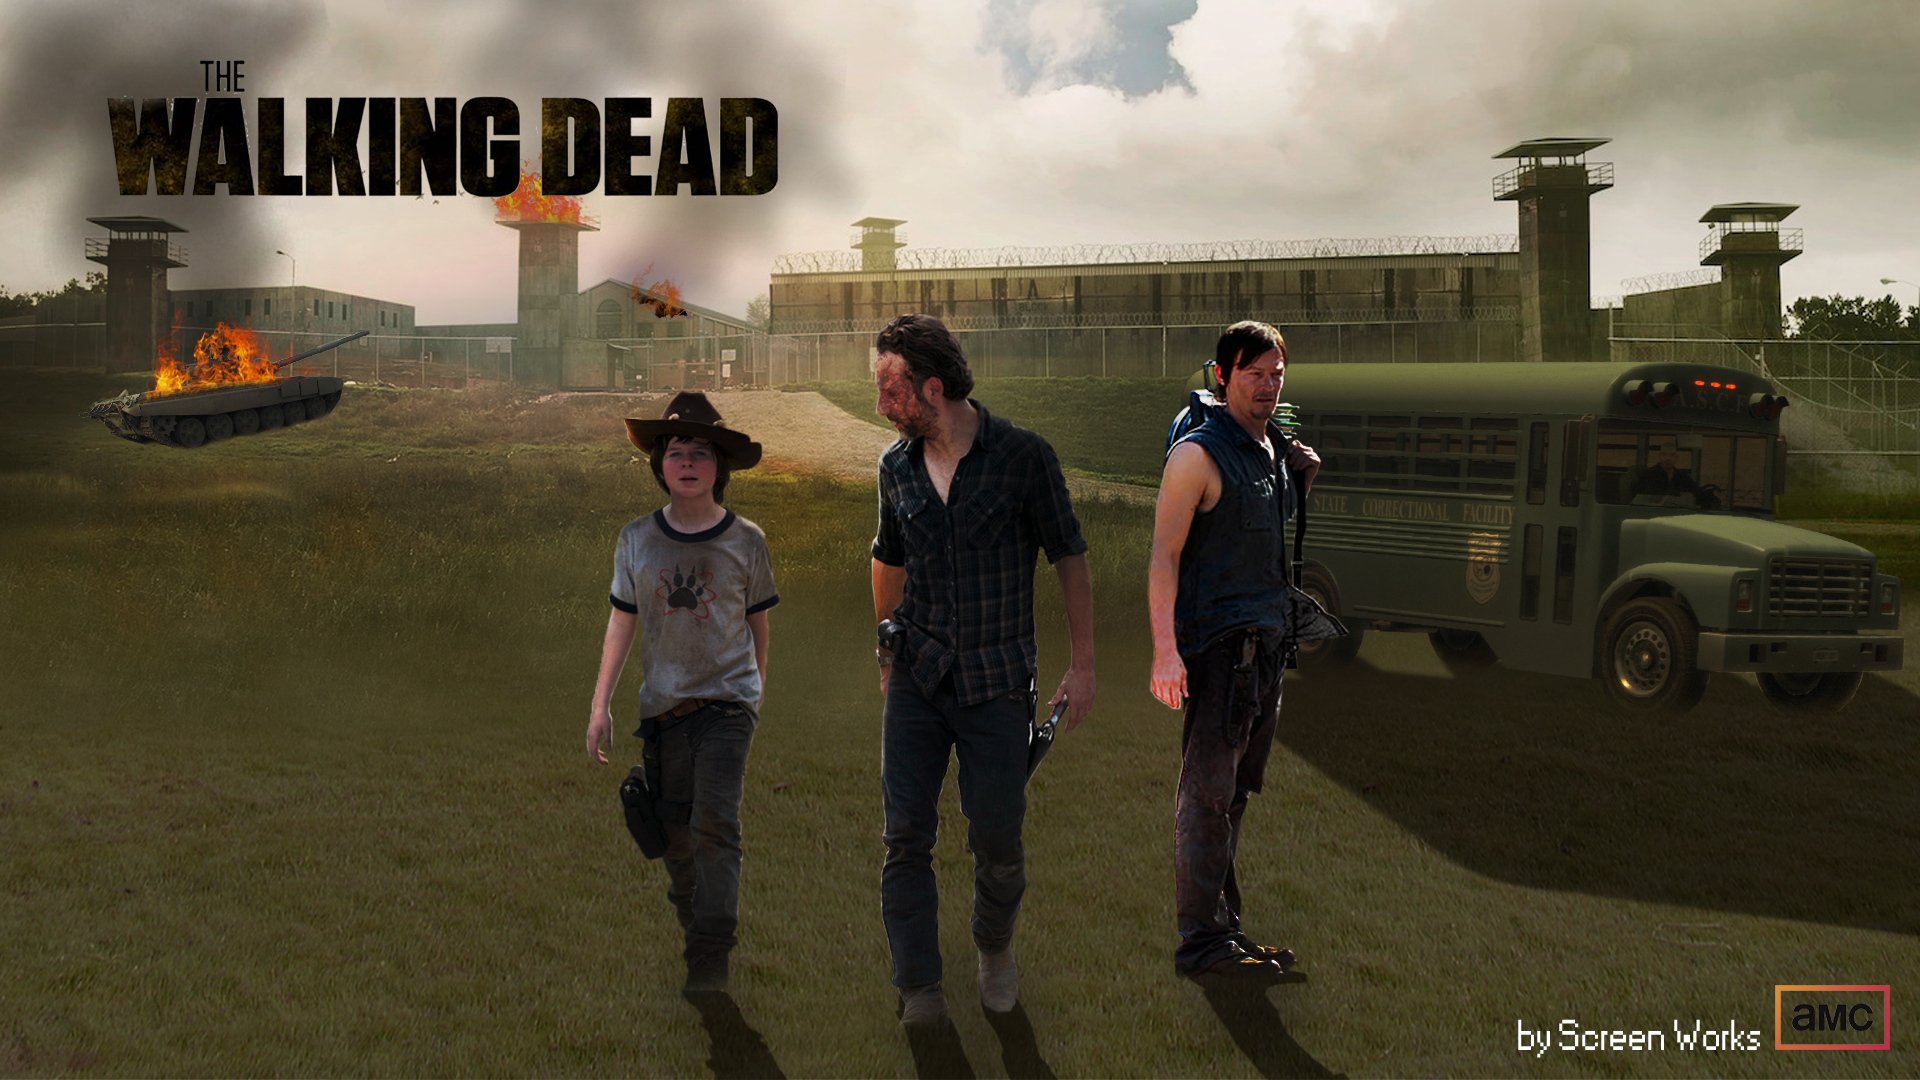 The Walking Dead - Season 4 Wallpaper ^^ by BryekGamer on DeviantArt